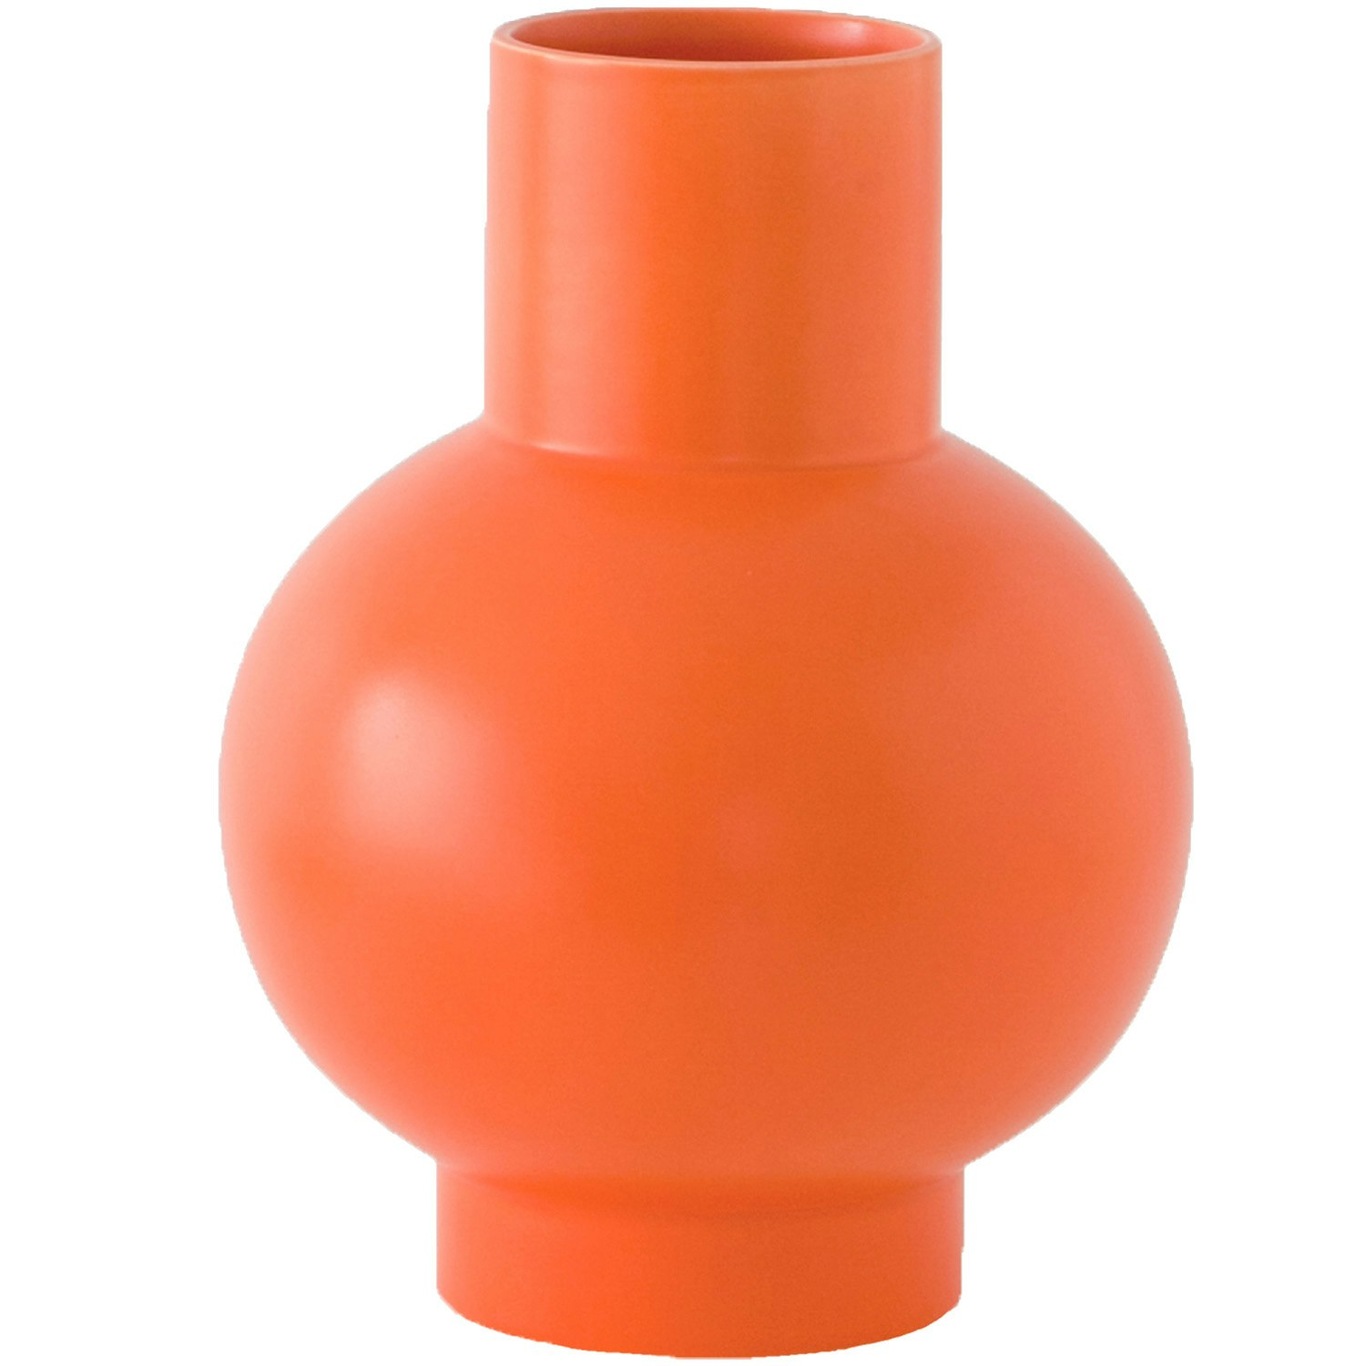 Strøm Vase 24 cm, Vibrant Orange